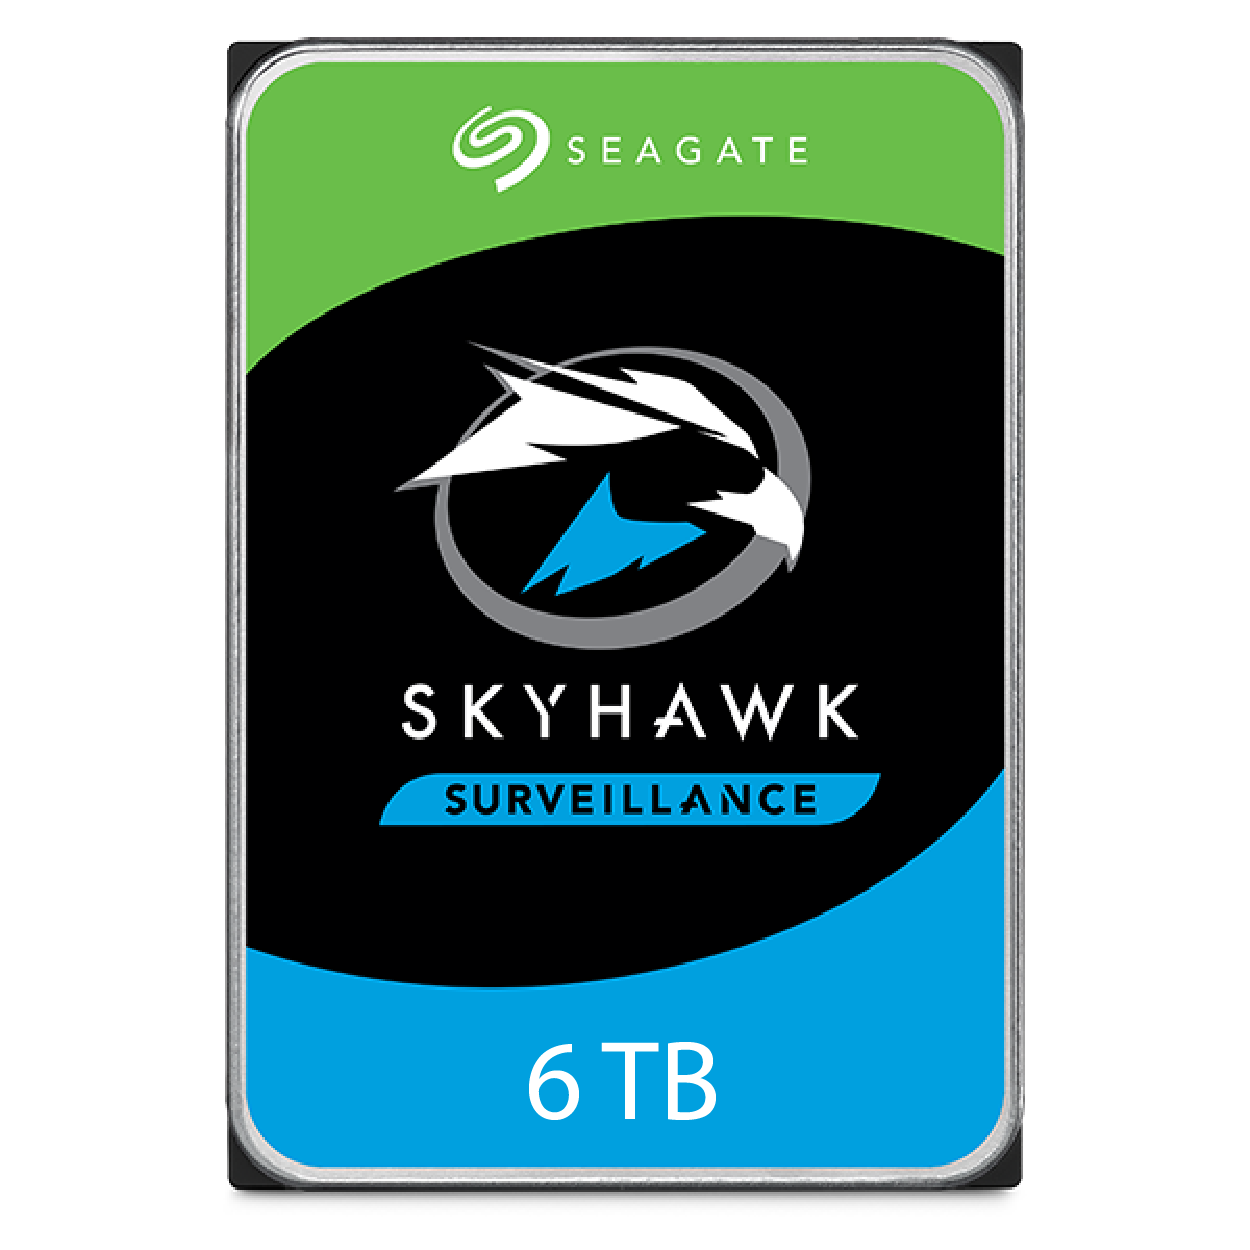 Seagate Skyhawk 6 TB 7/24 Güvenlik Harddiski ITH